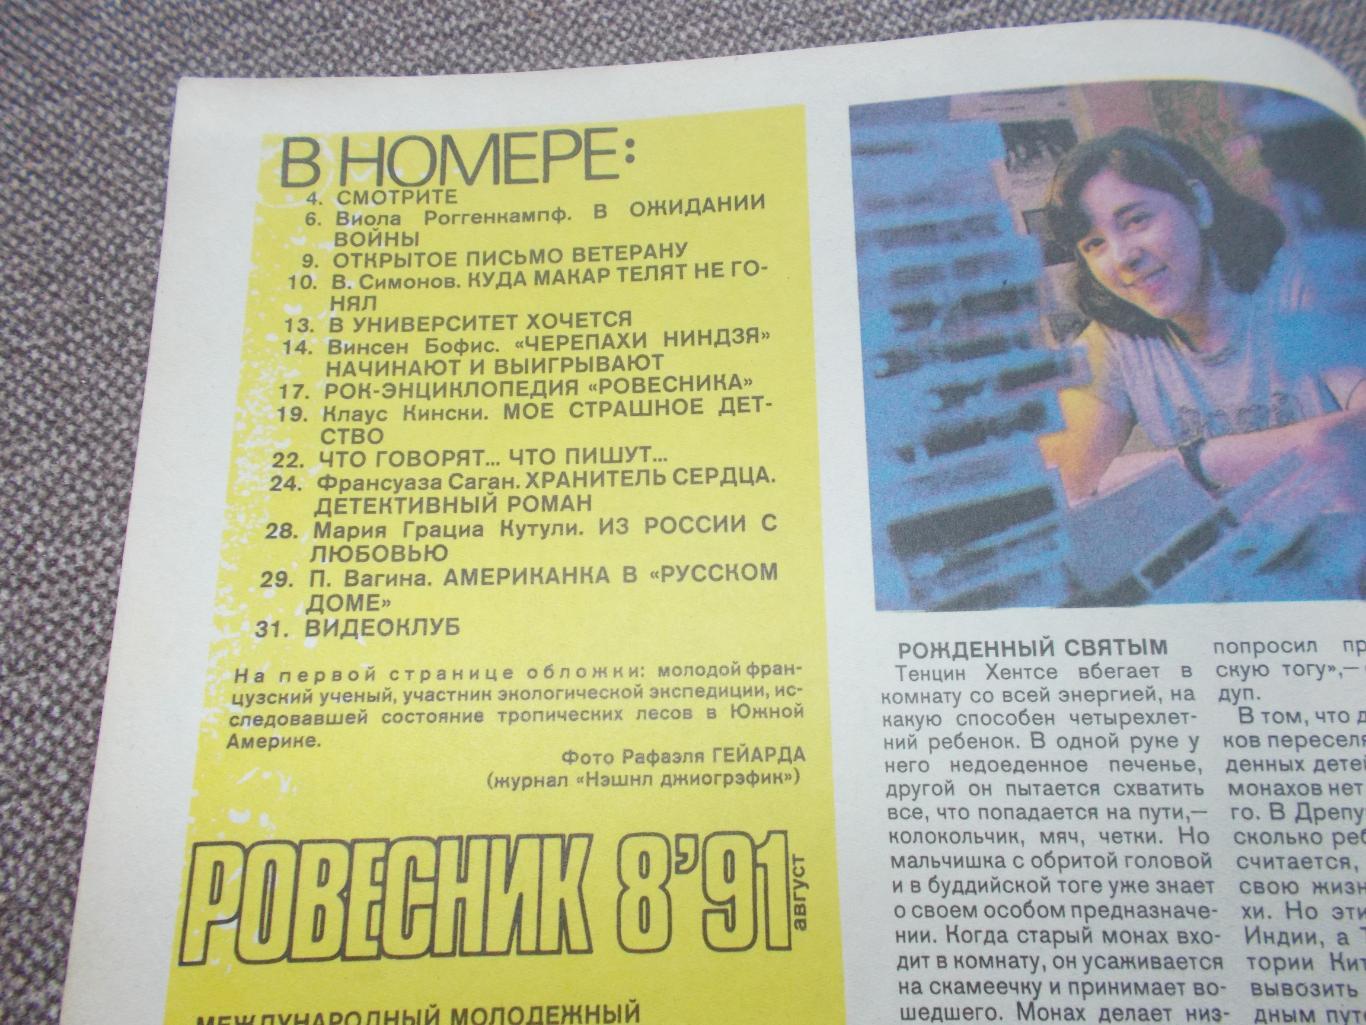 Журнал СССР :Ровесник№ 8 (август) 1991 г. (Молодежный музыкальный журнал) 2